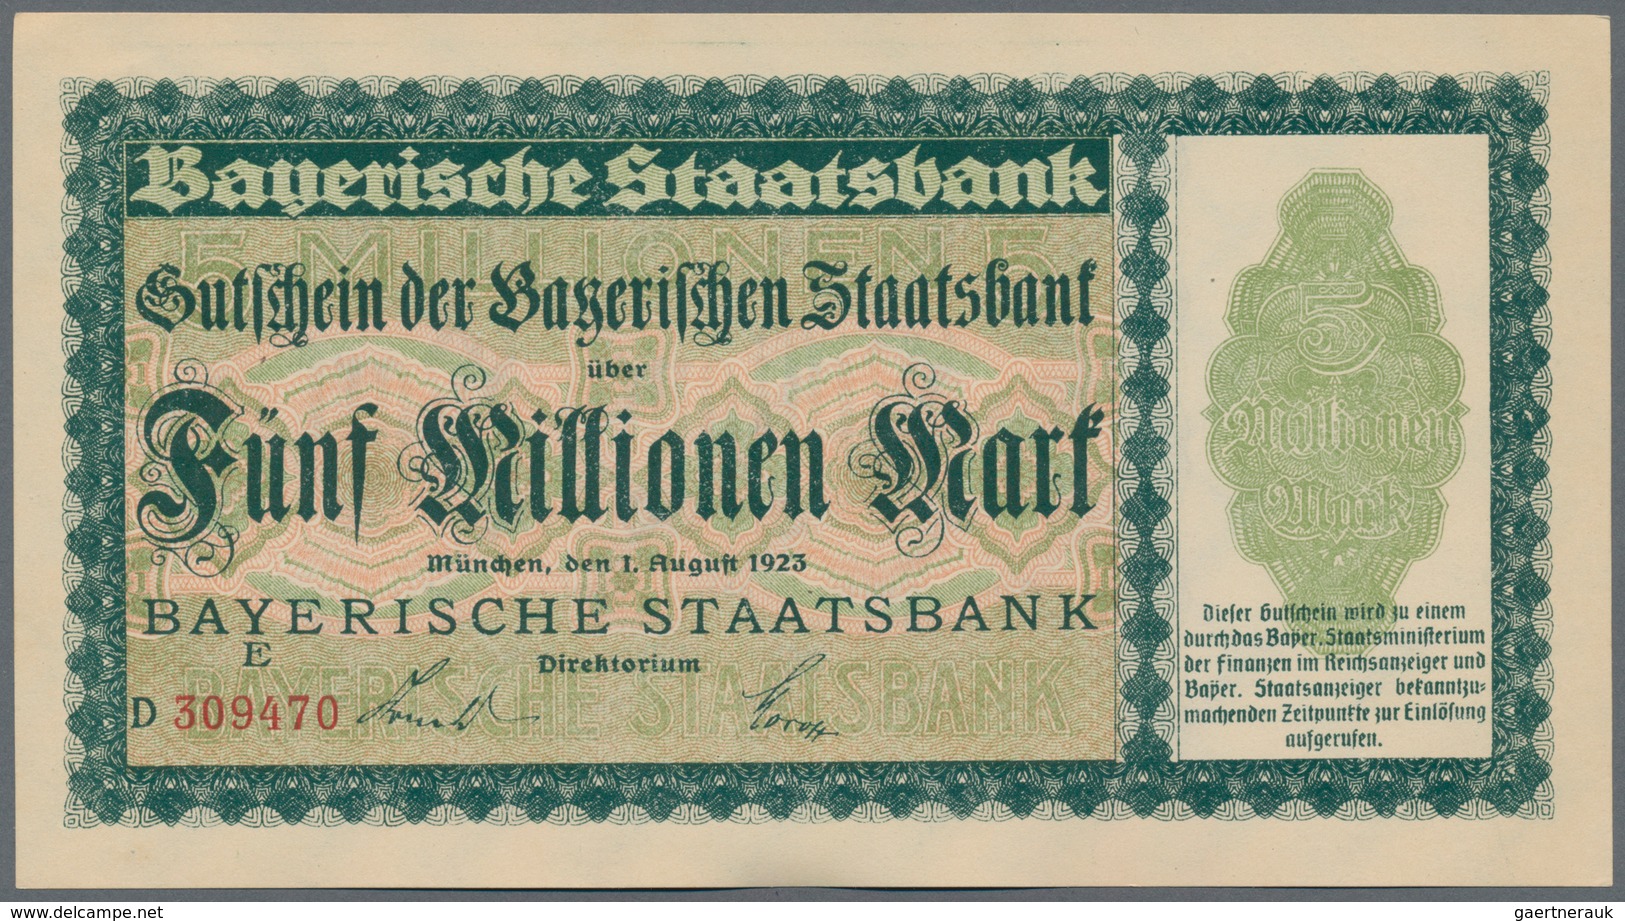 Deutschland - Länderscheine: Lot mit 14 Banknoten, dabei 5 Rentenmark 1926 in VF, DDR 10 Mark 1954 M